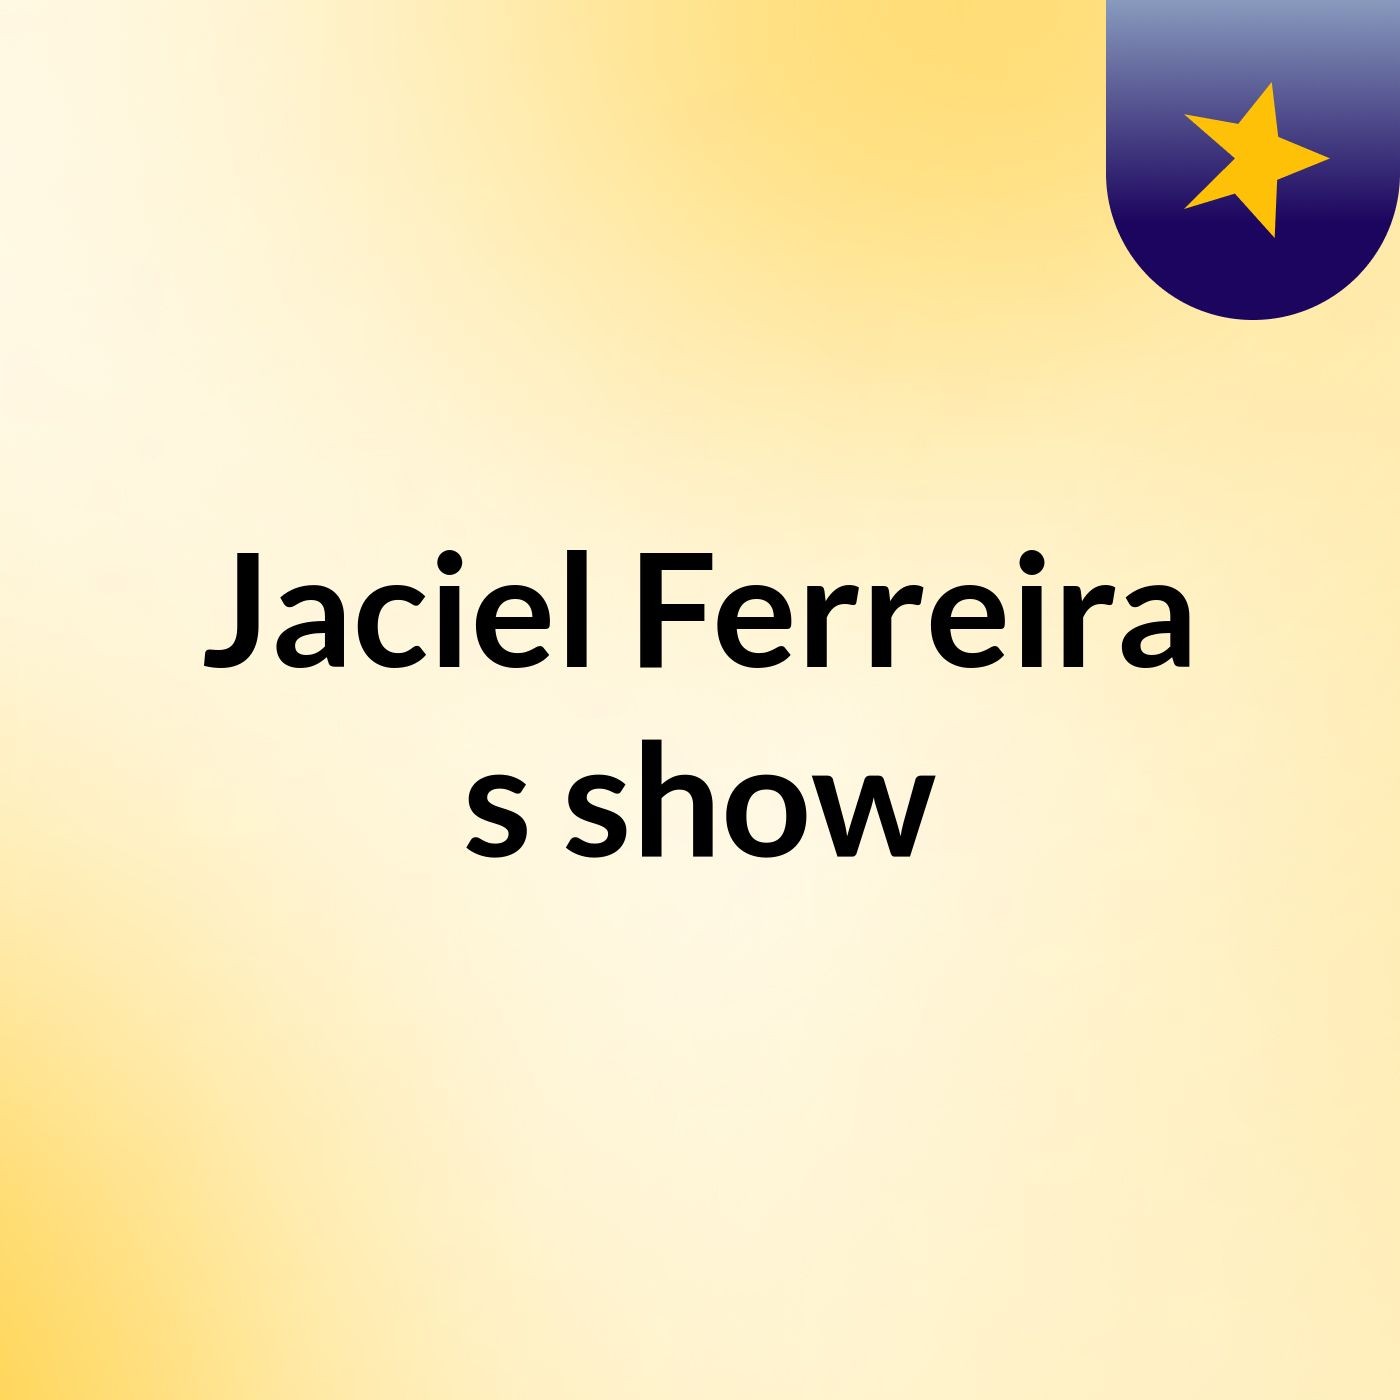 Jaciel Ferreira's show